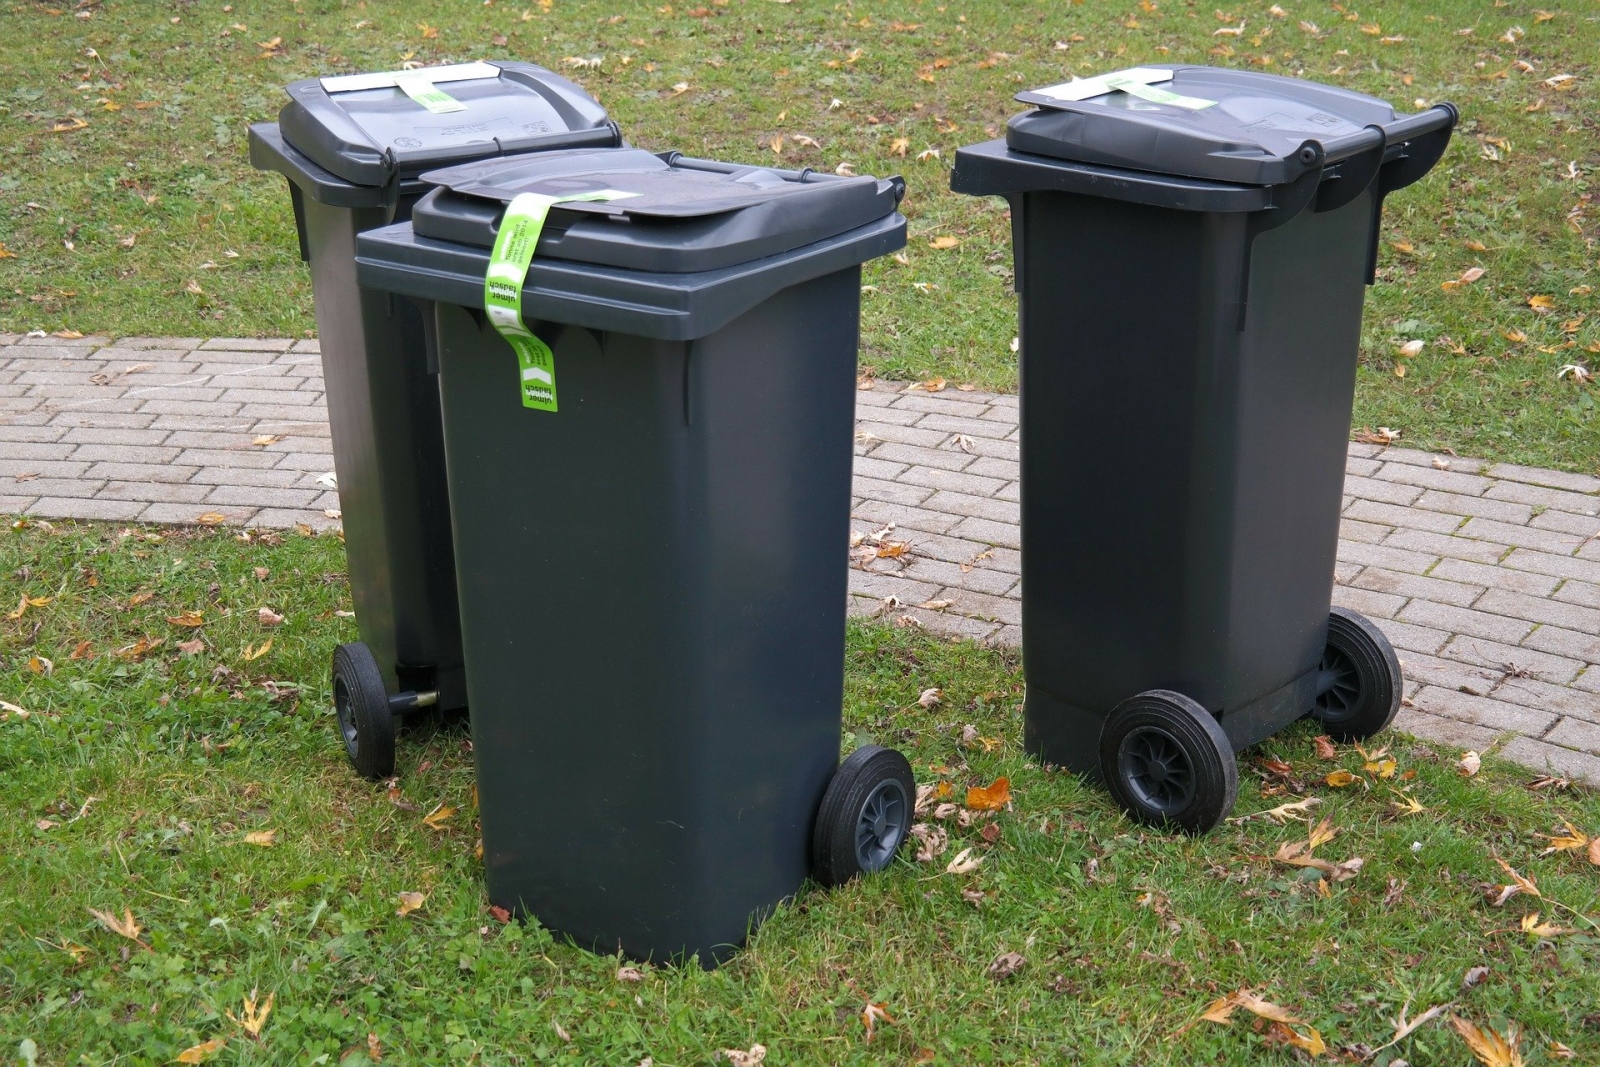 Harmonogram wywozu odpadów komunalnych na rok 2020